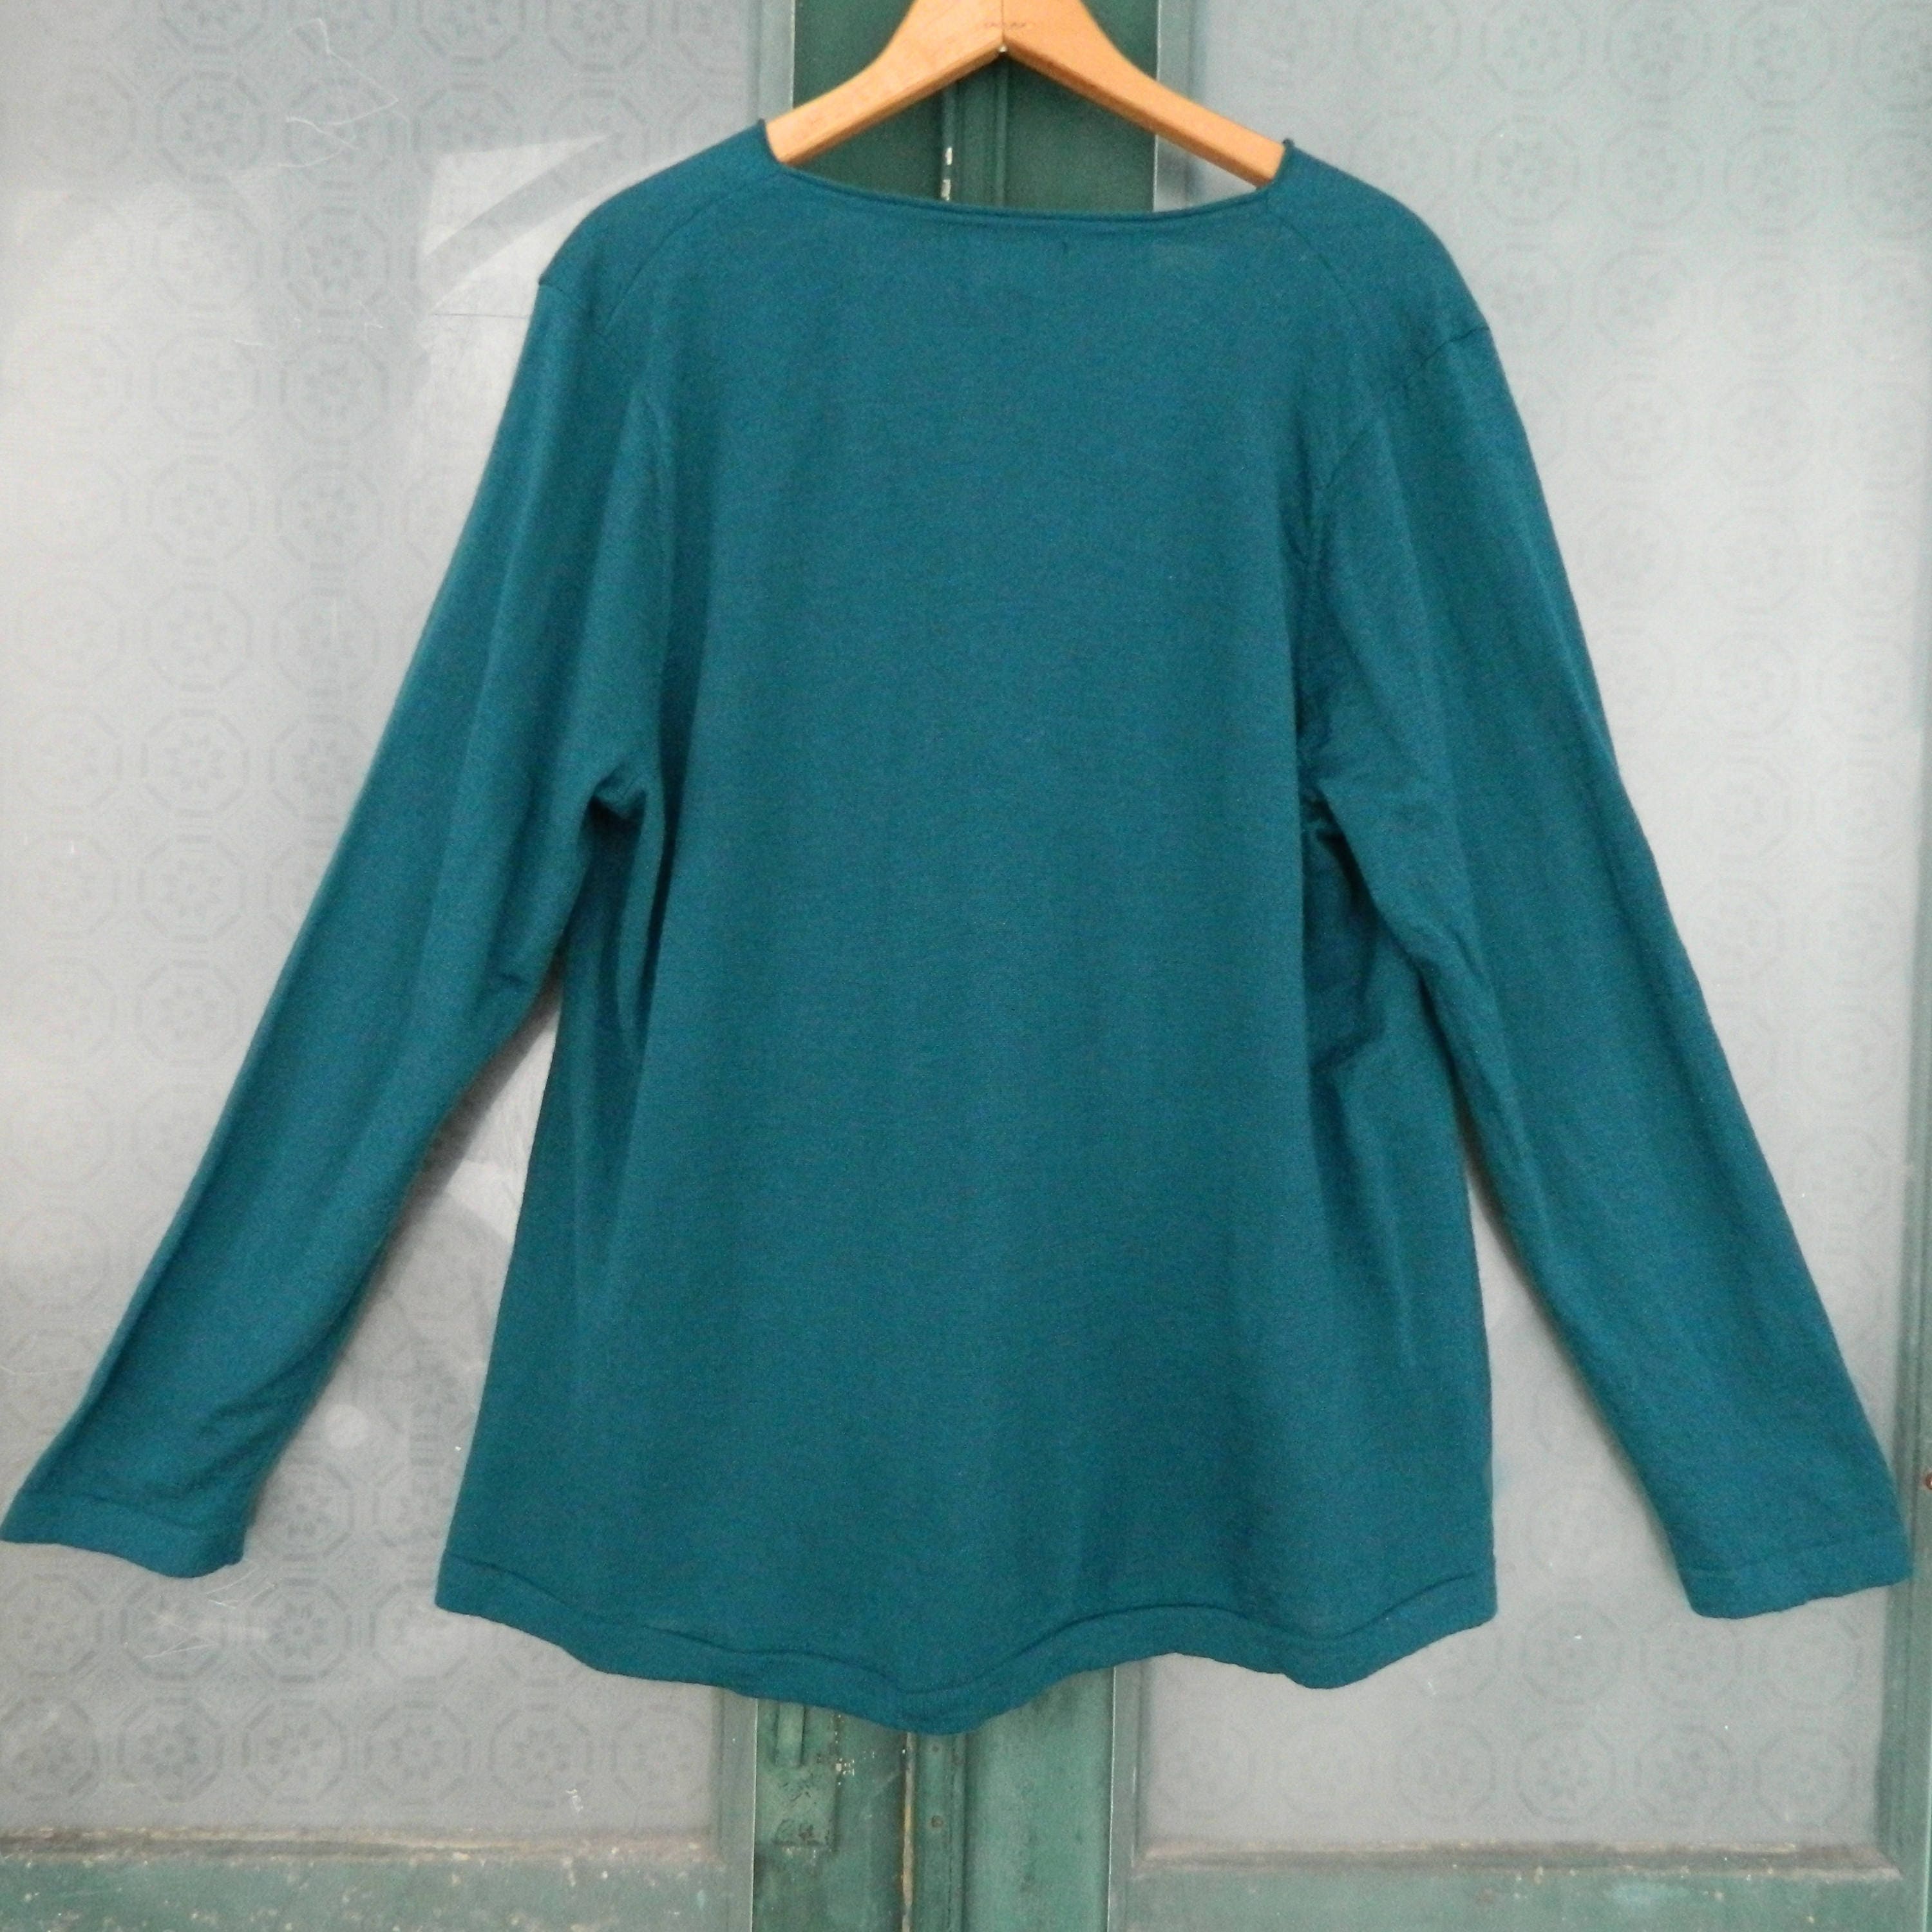 Cynthia Rowley Pullover Sweater -3X- Teal Merino Wool